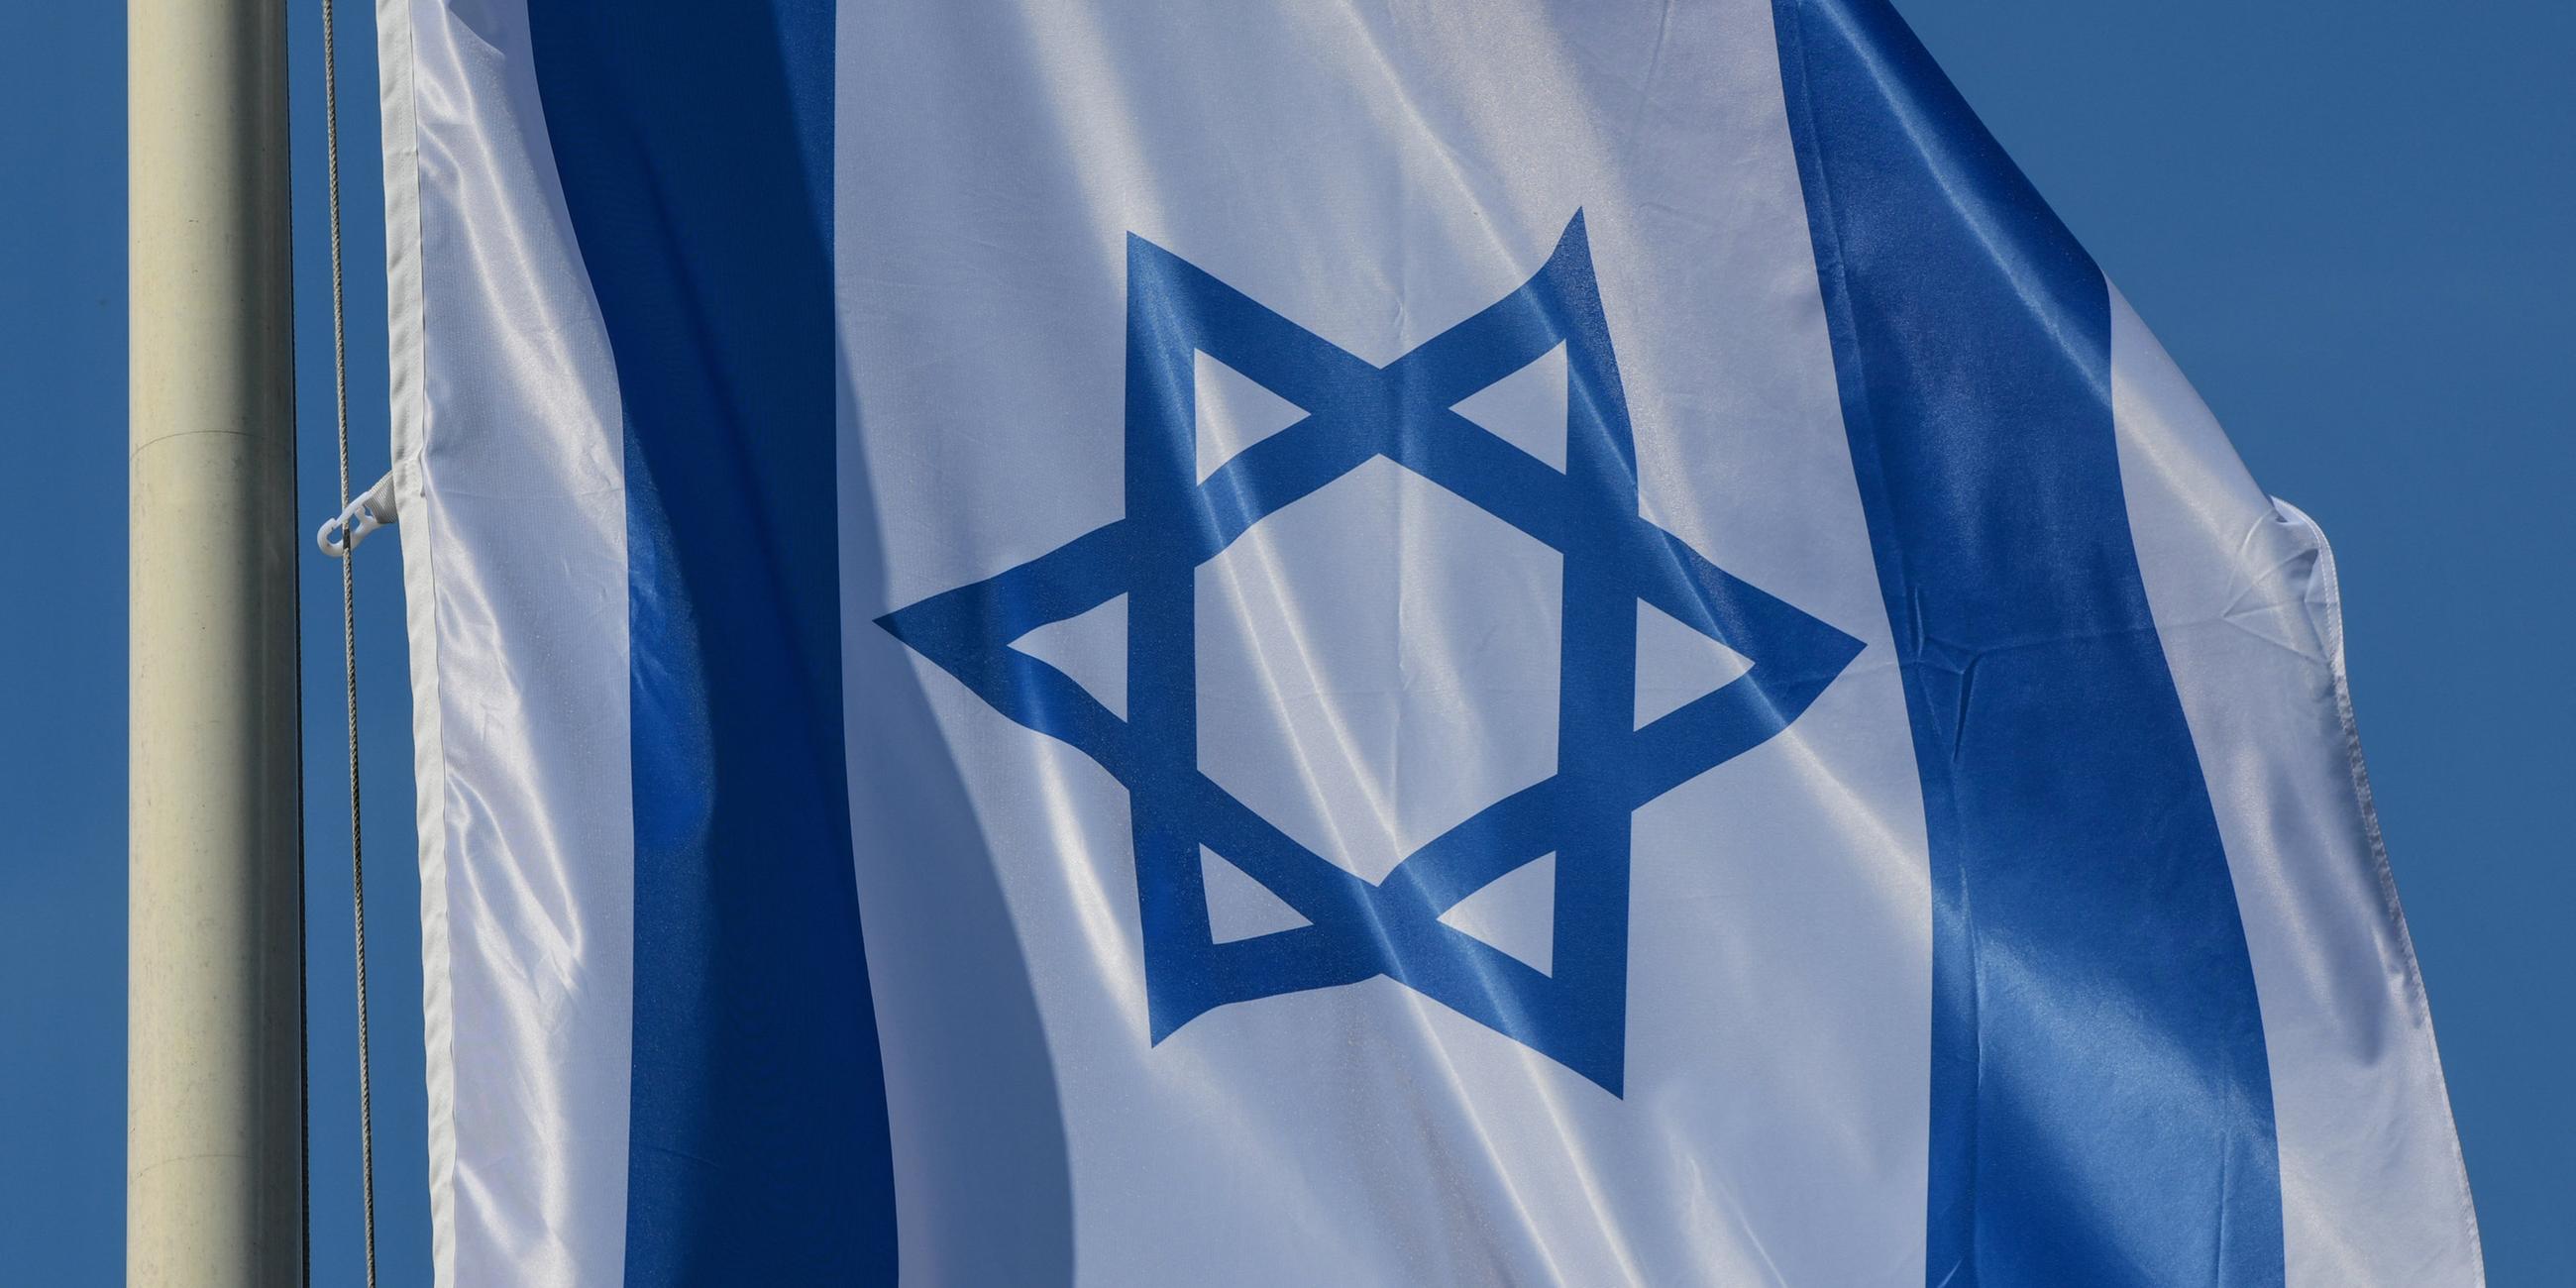 die flagge israels besteht aus einem zentral angeordneten blauen davidstern zwischen zwei waagerechten blauen streifen auf weissem grund